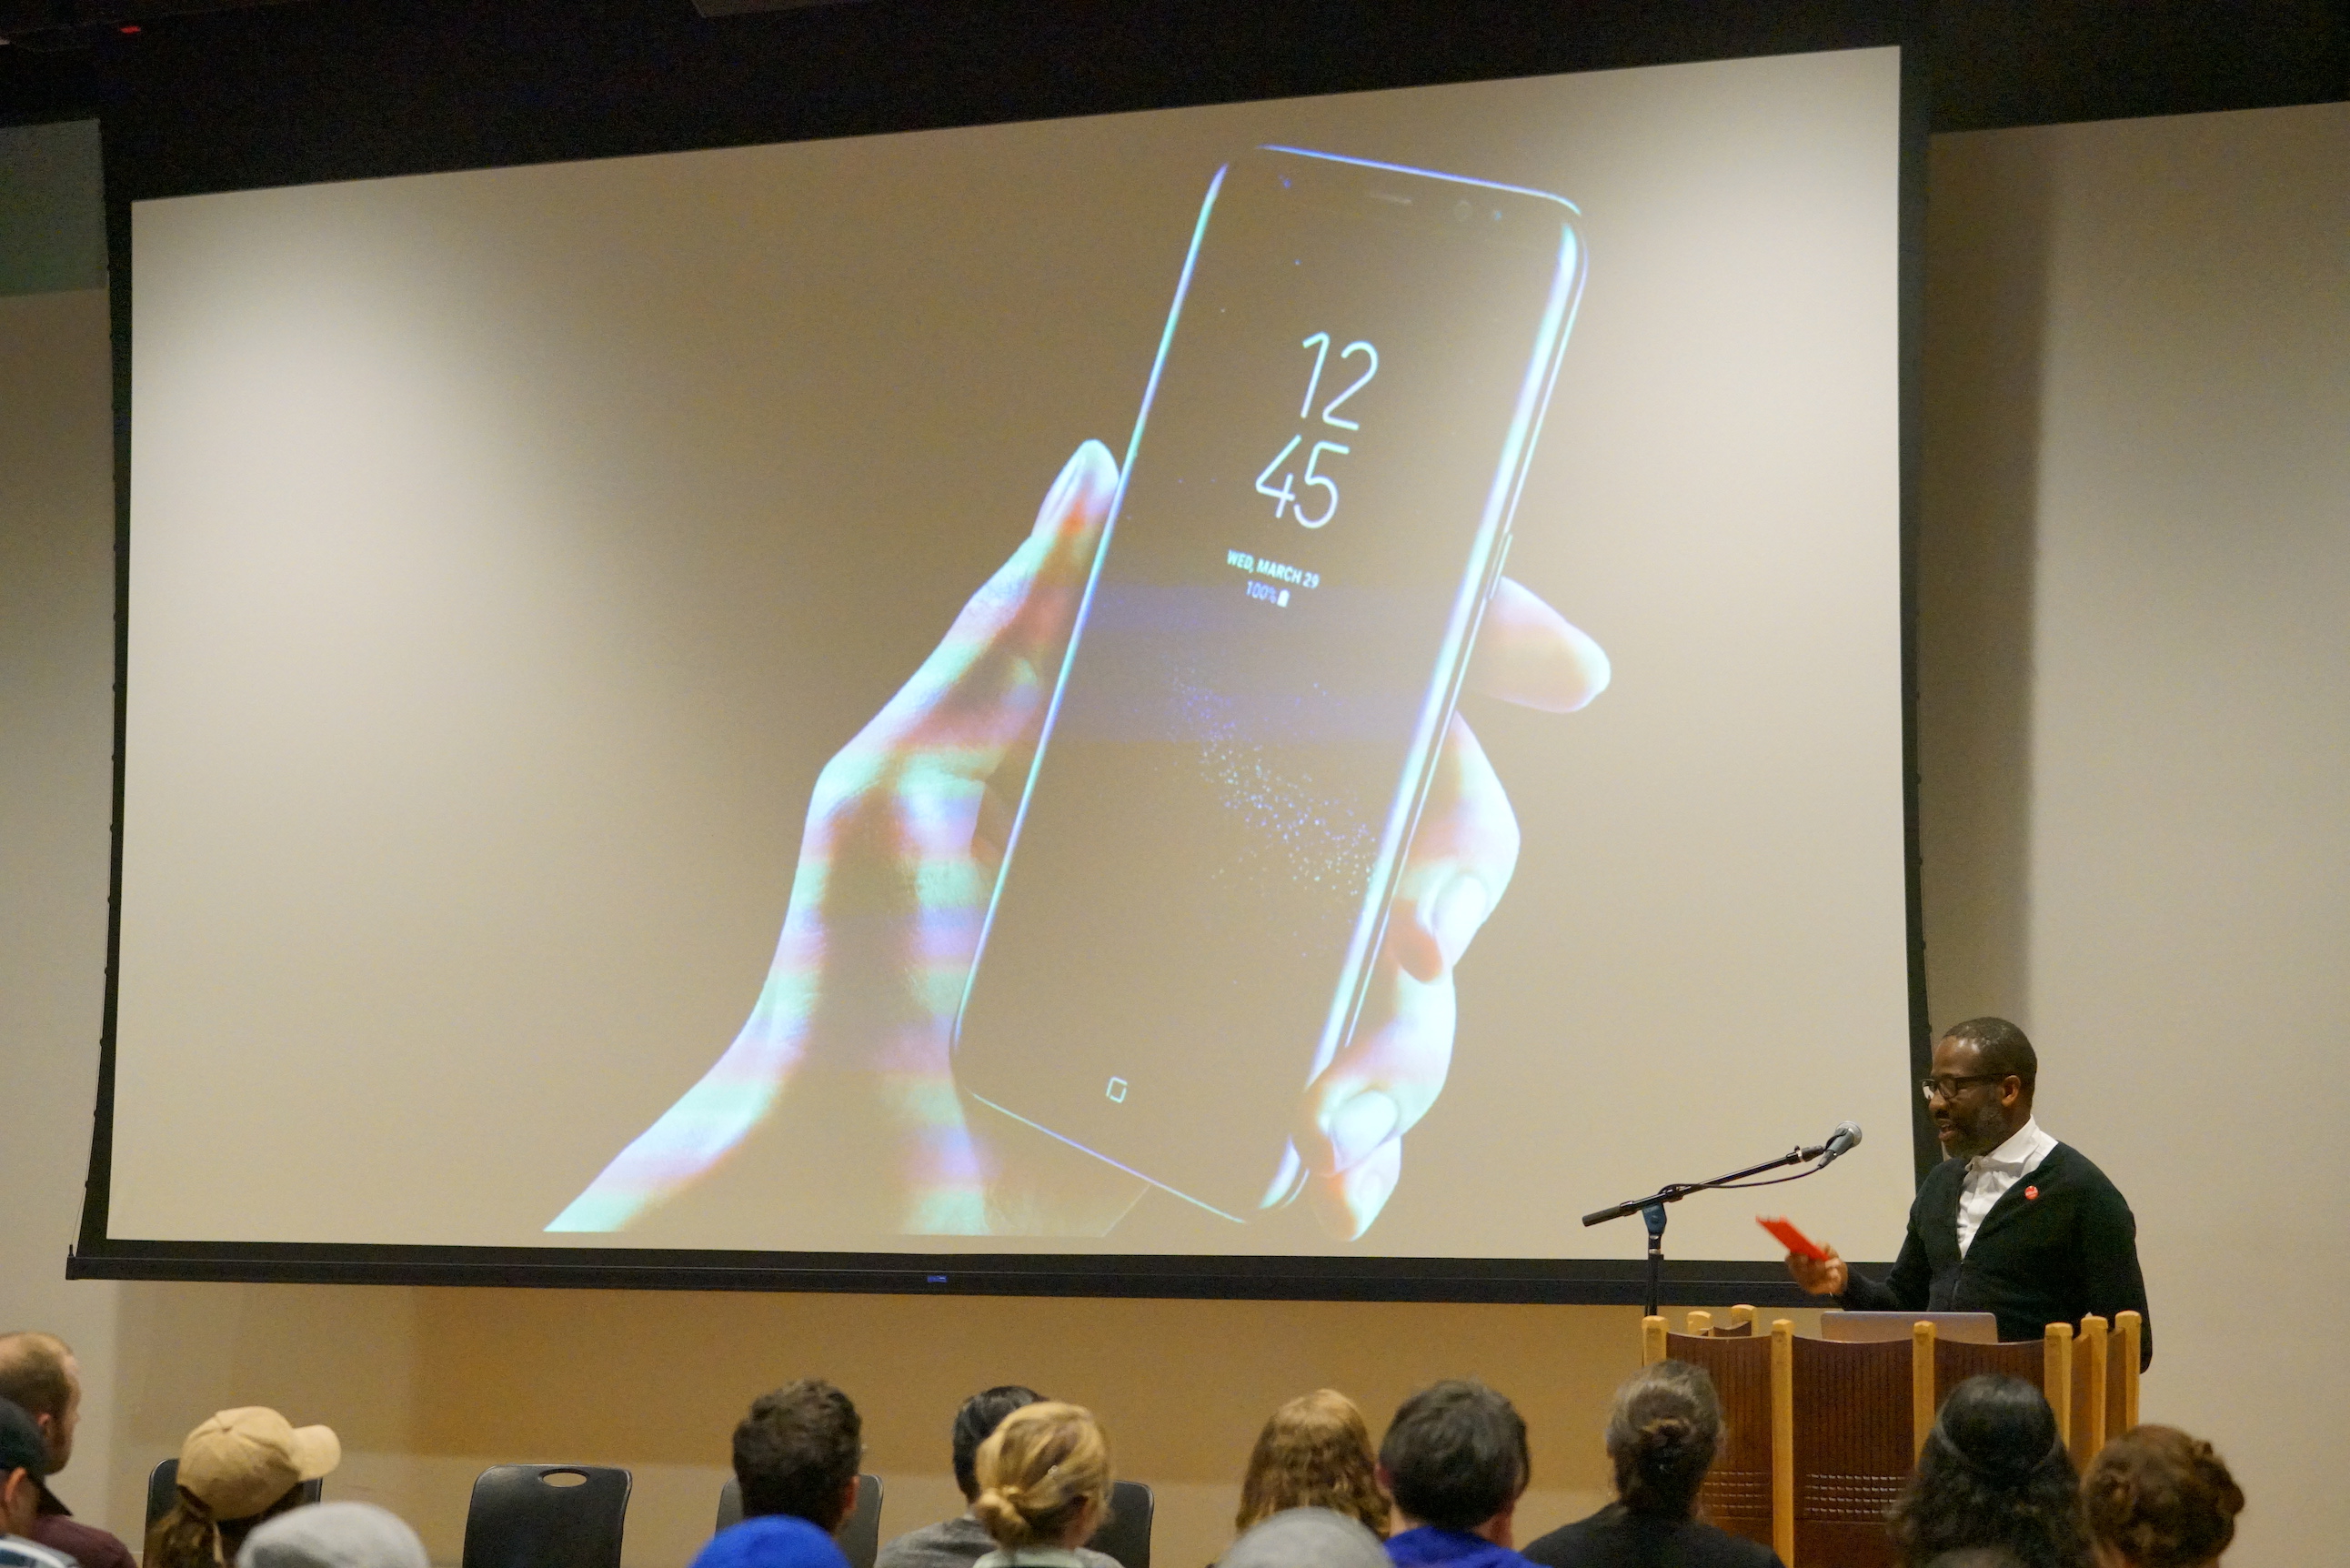 Eddie Opara's work on the Samsung S8